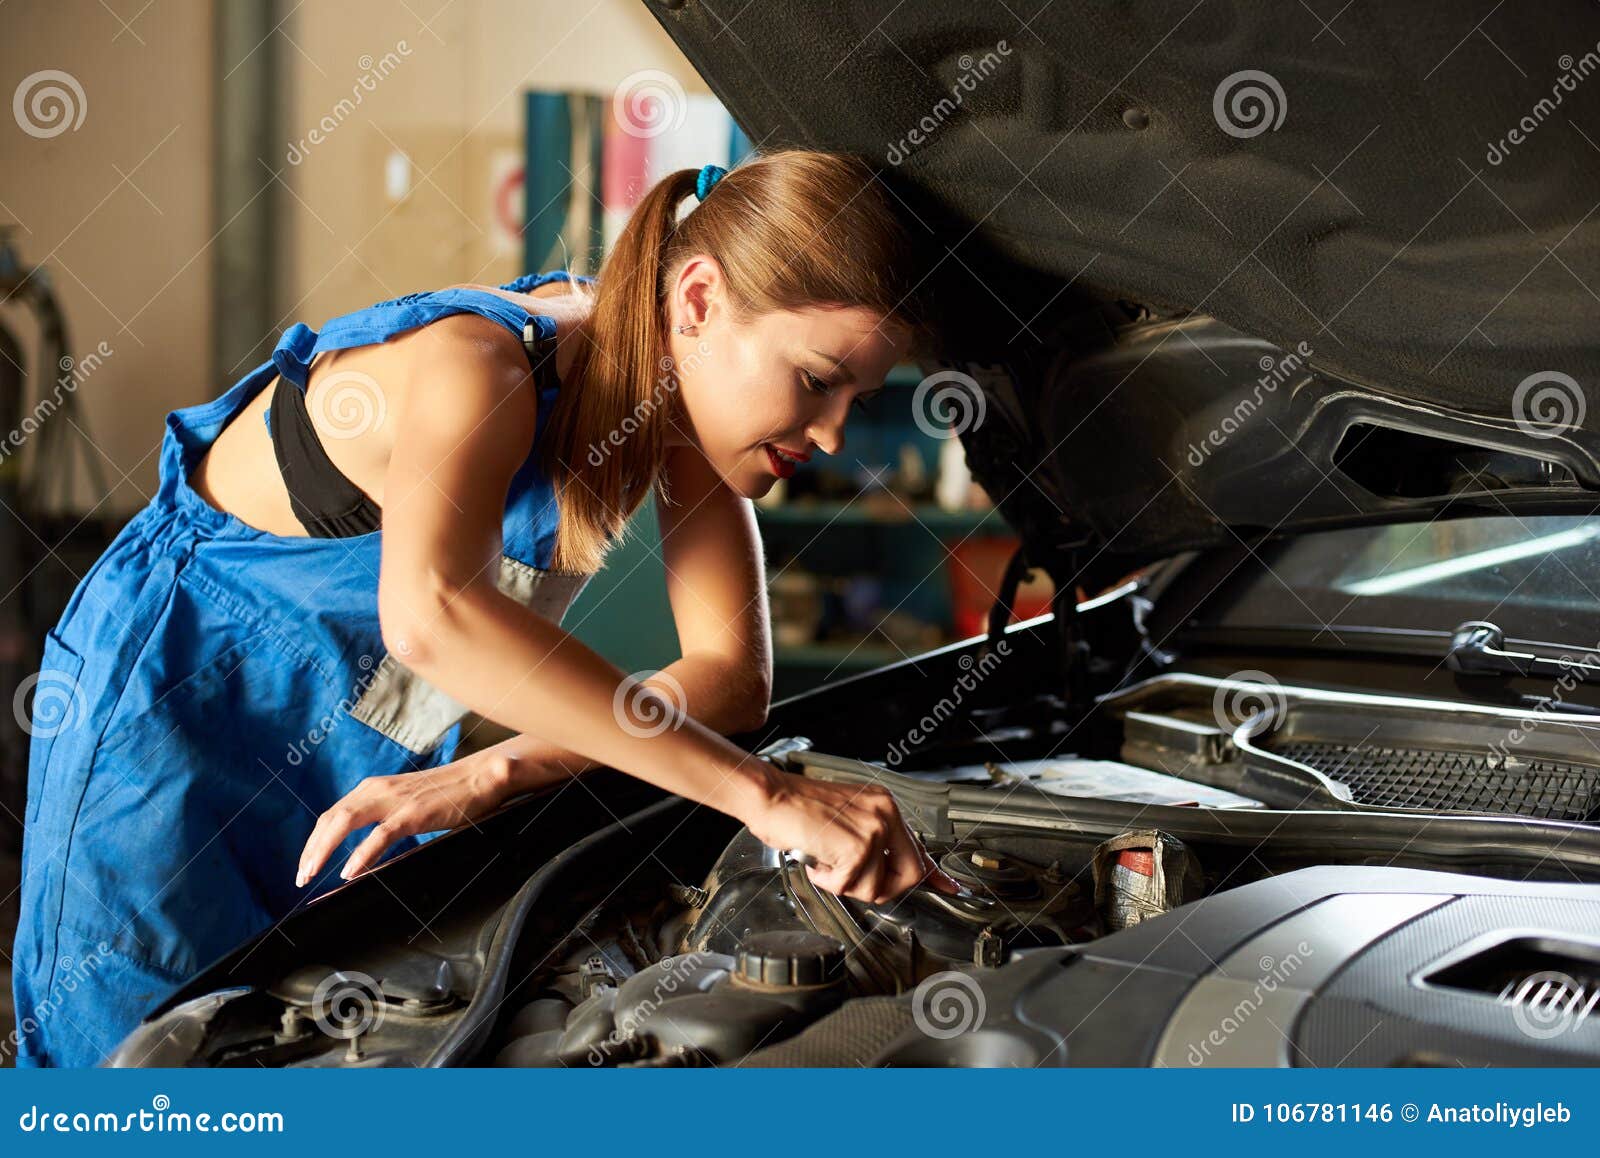 Скачай машину надо чинить. Девушка чинит машину. Девушка ремонтирует машину. Женщина автомеханик. Девушка автослесарь.